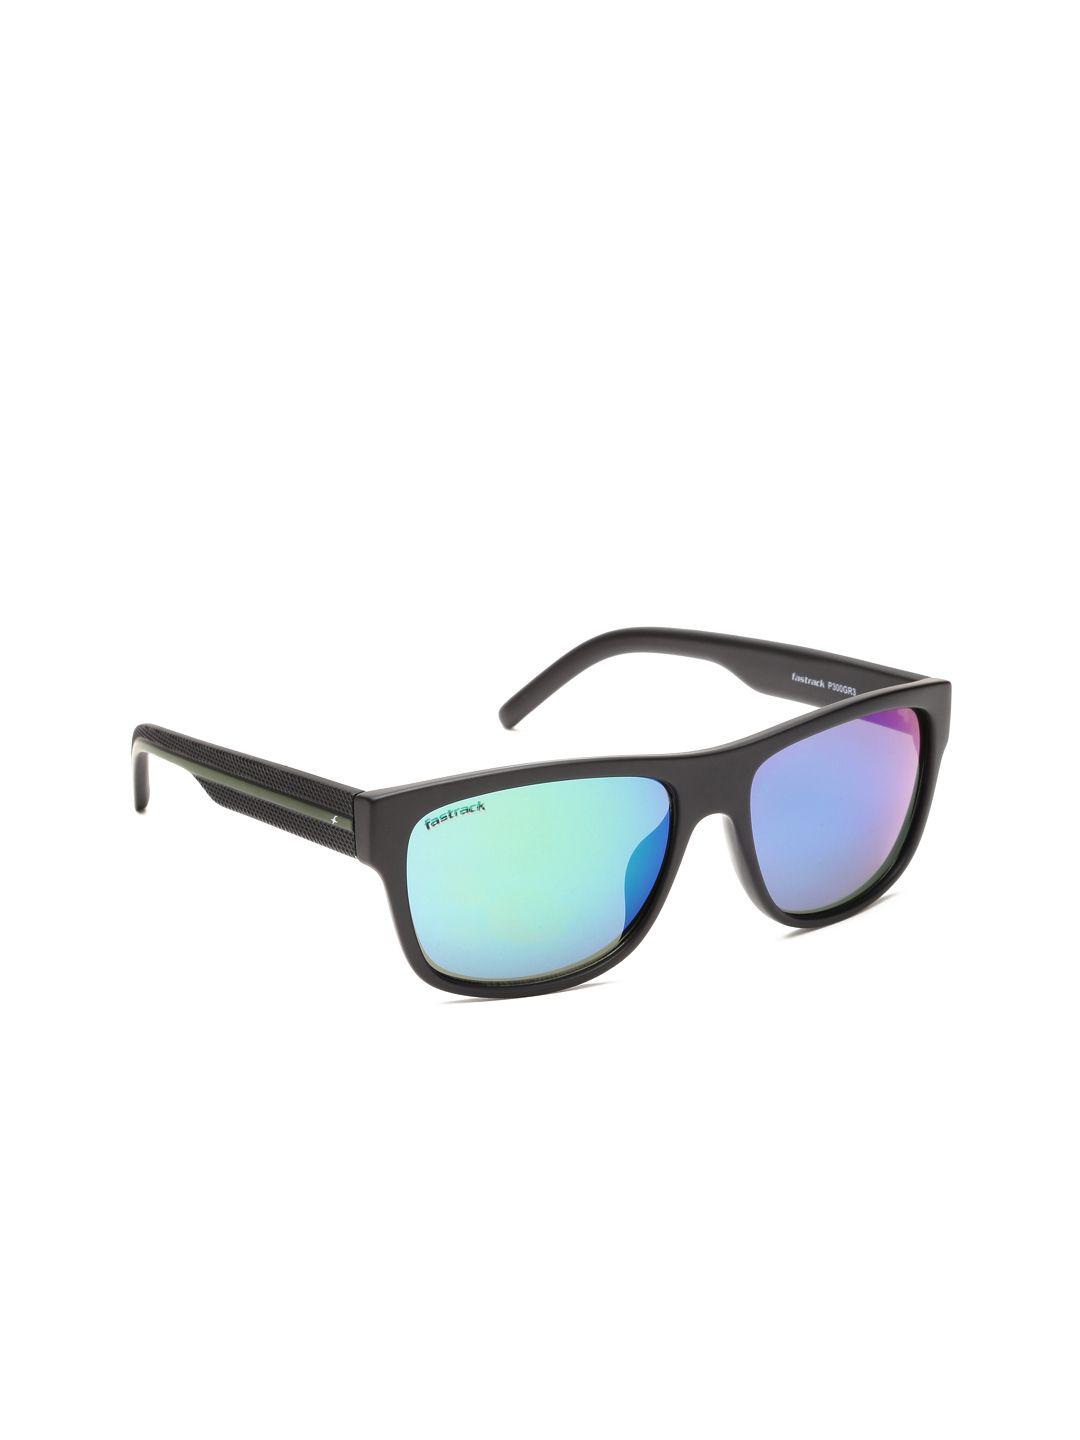 fastrack-men-mirrored-wayfarer-sunglasses-p300gr3